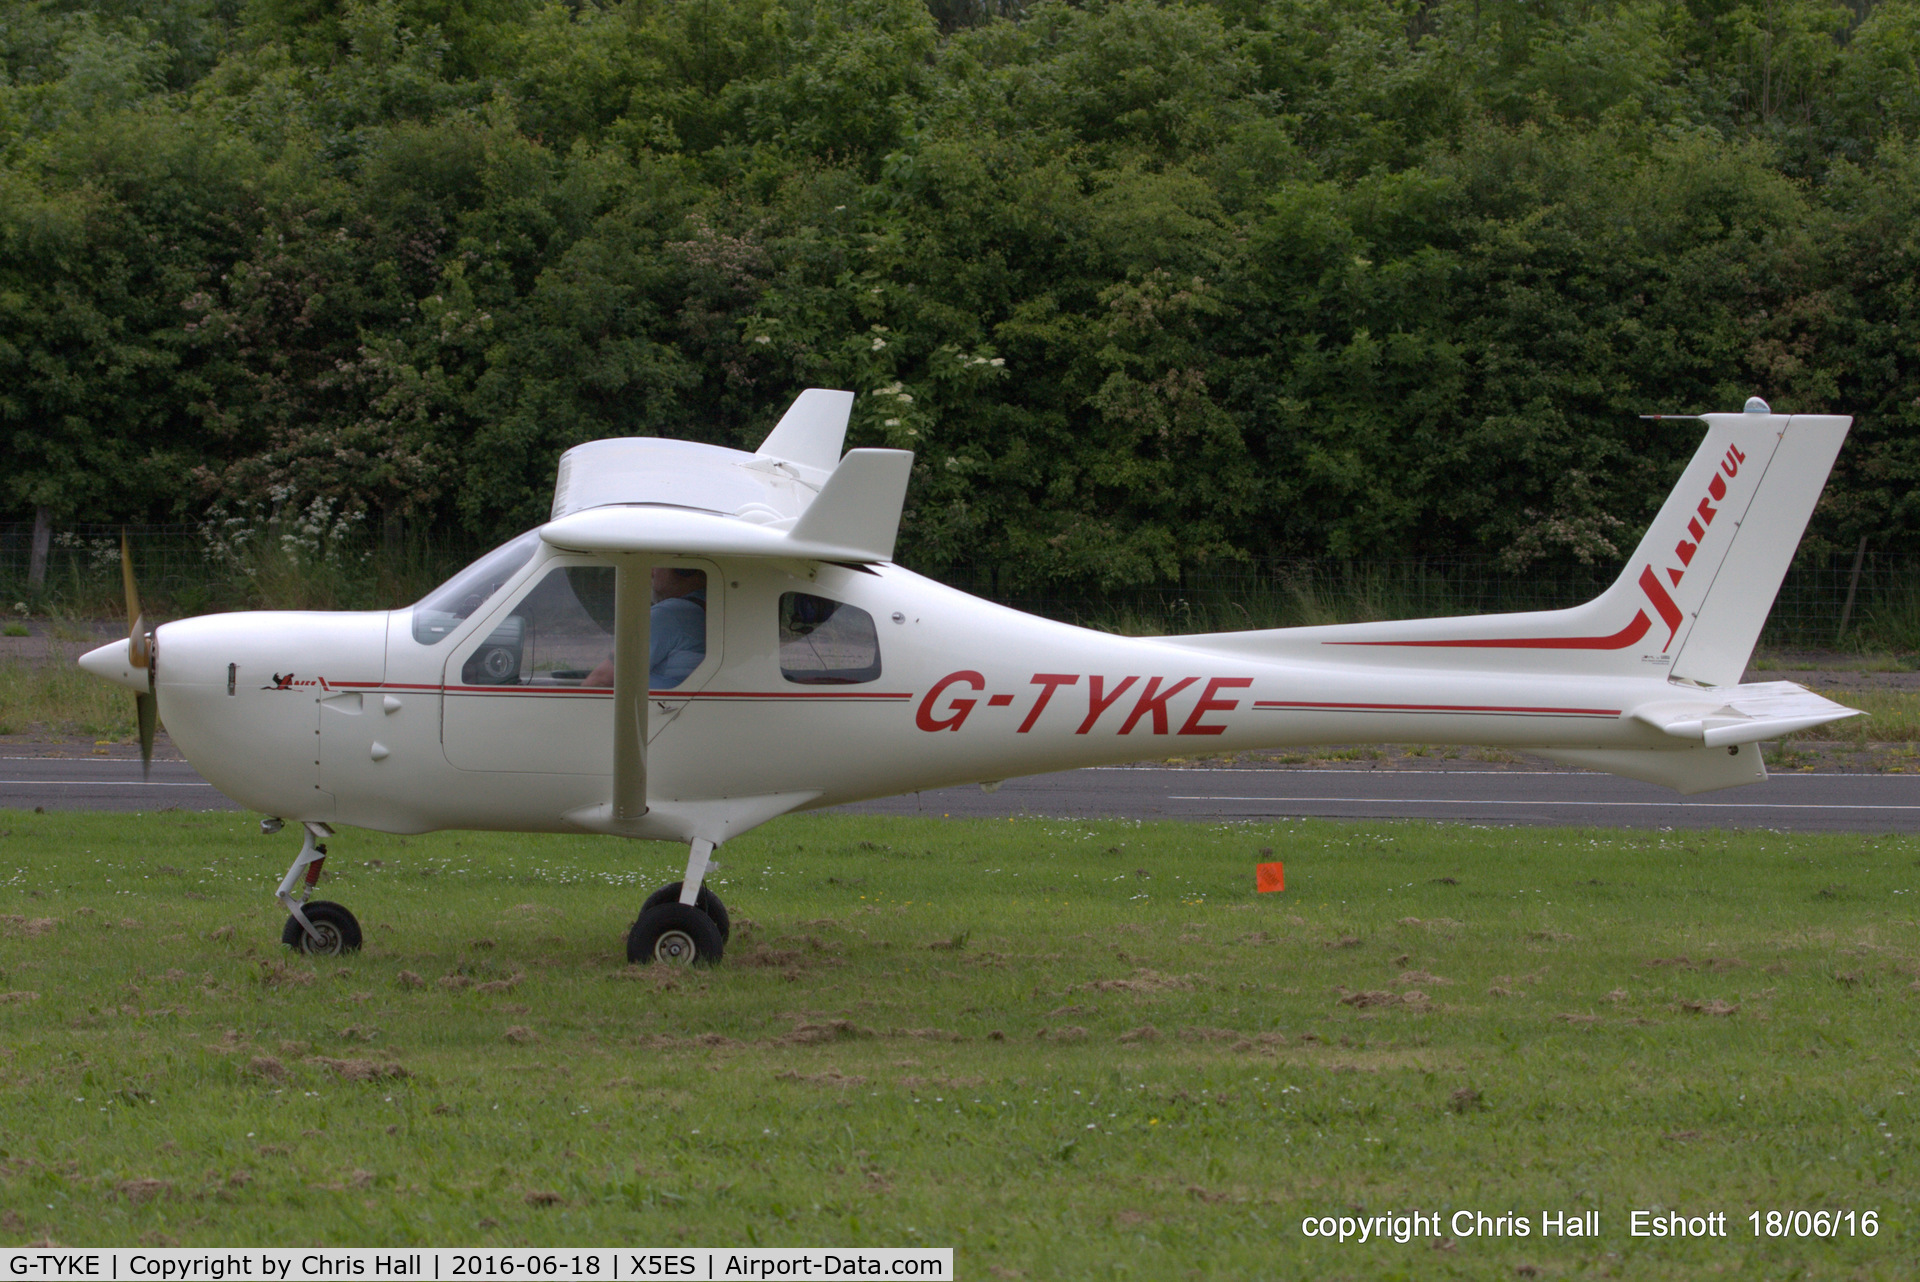 G-TYKE, 2001 Jabiru UL-450 C/N PFA 274A-13739, at the Great North Fly in. Eshott